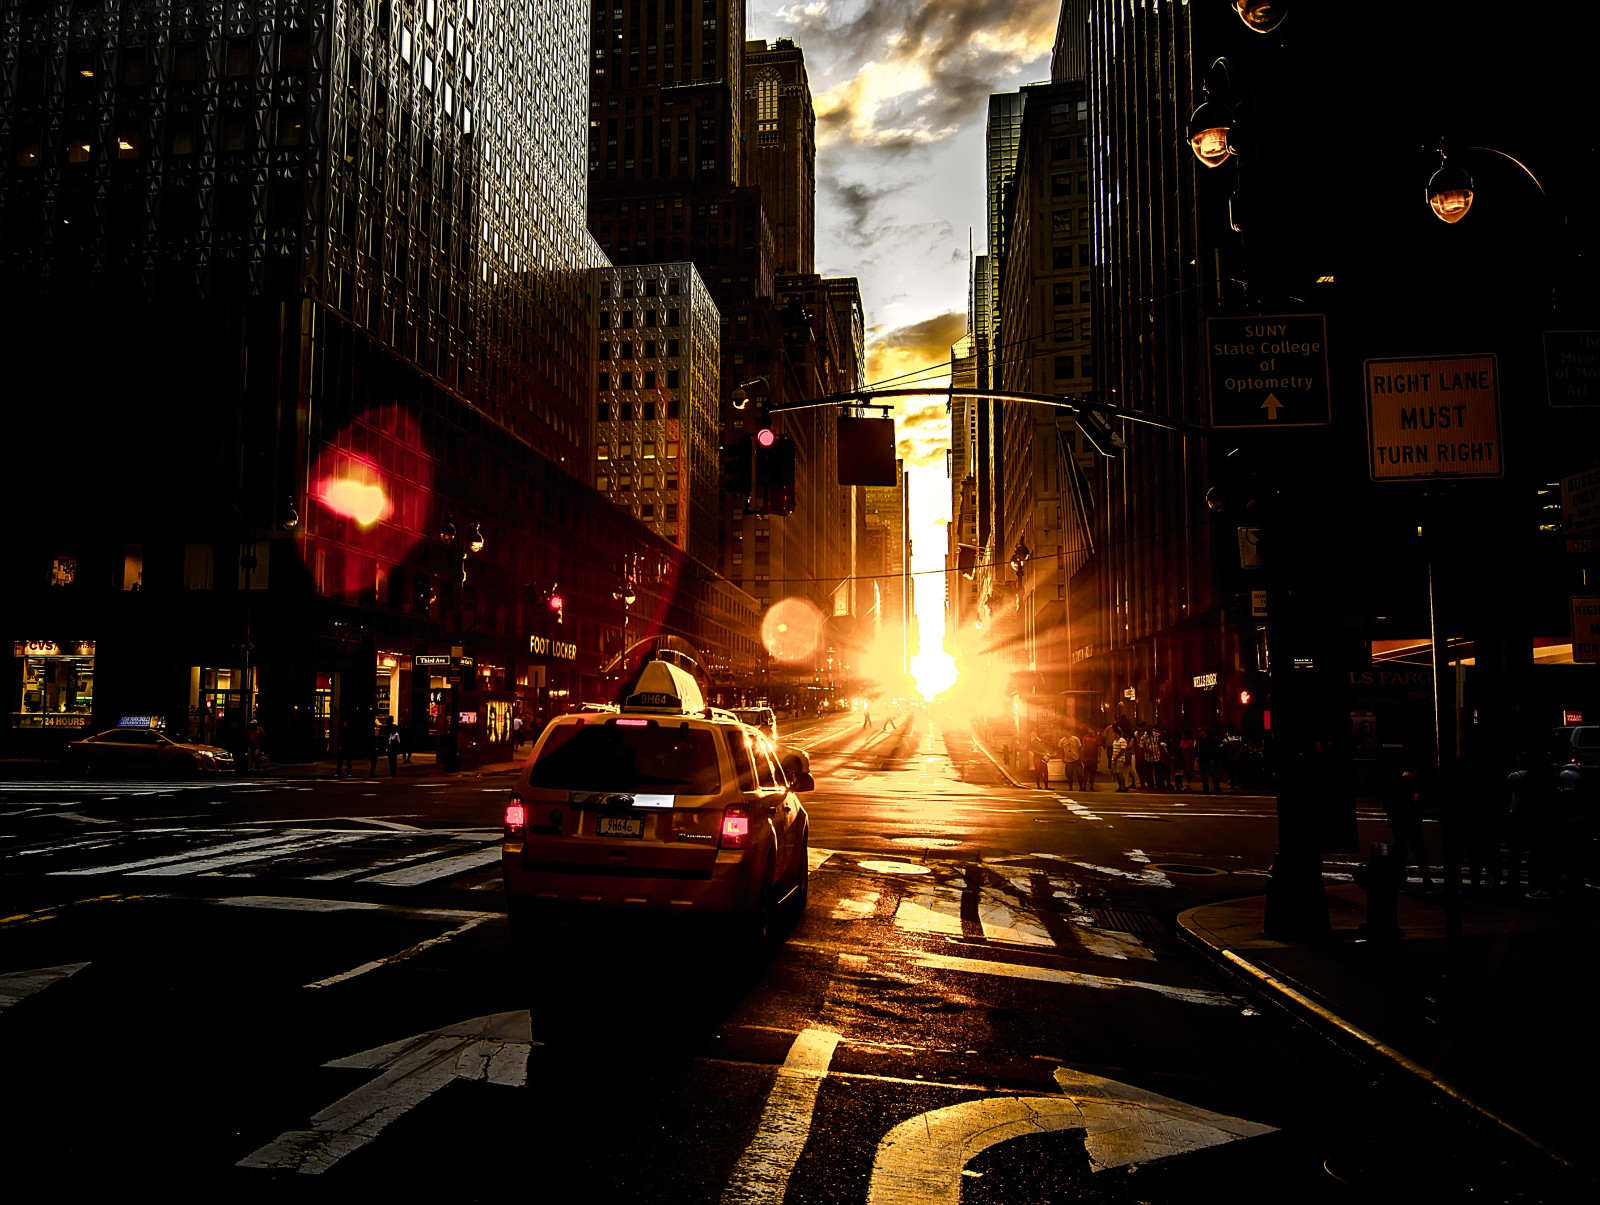 ถนน, บ้าน, รุ่งอรุณ, เรืองแสง, ดวงอาทิตย์, นิวยอร์ก, รถแท็กซี่